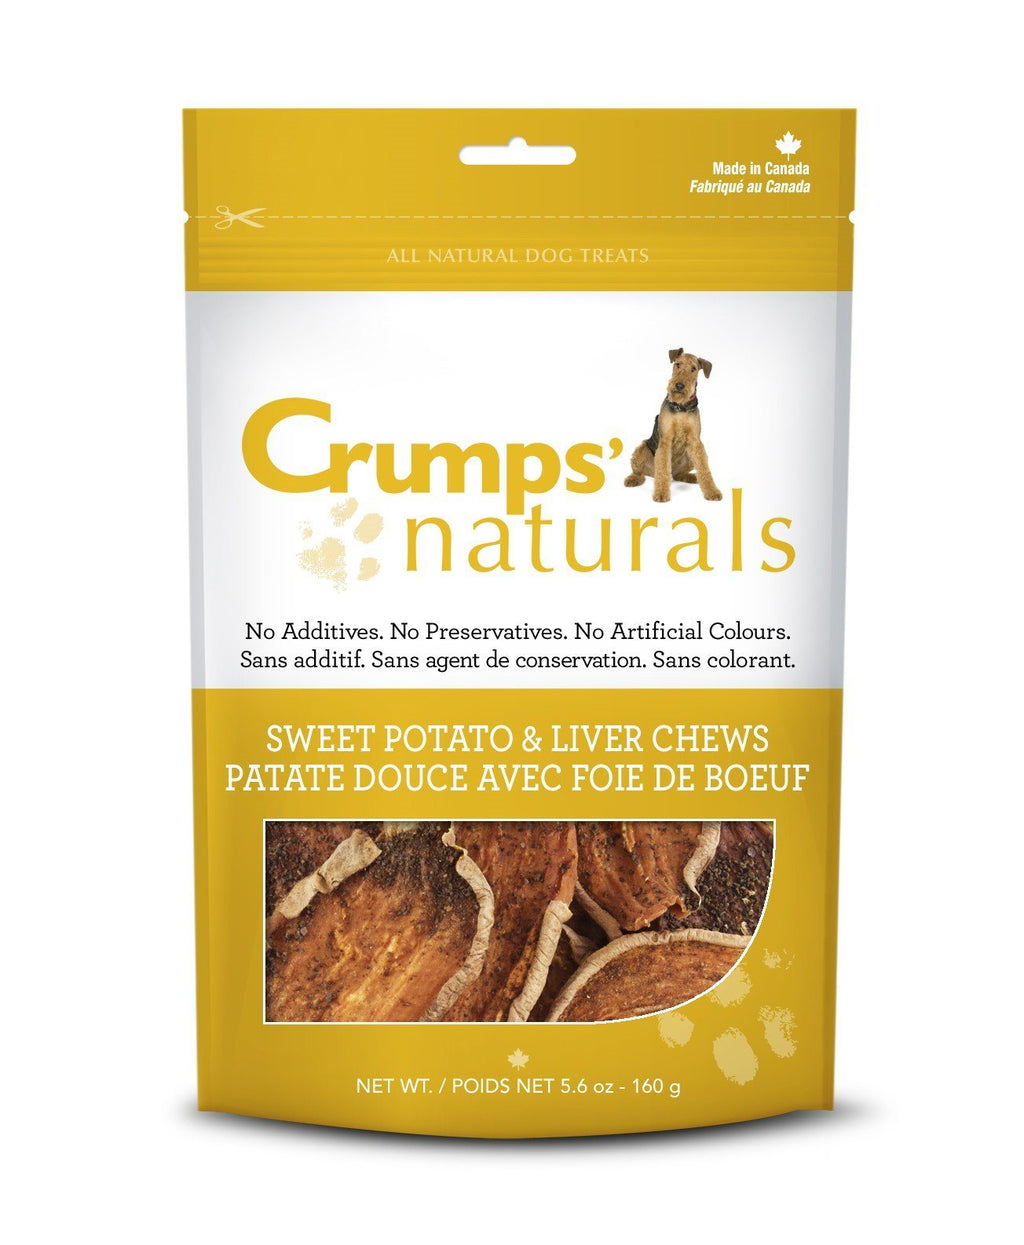 Crumps' Naturals Sweet Potato & Liver Chews Chewy Dog Treats - 24 oz Bag  